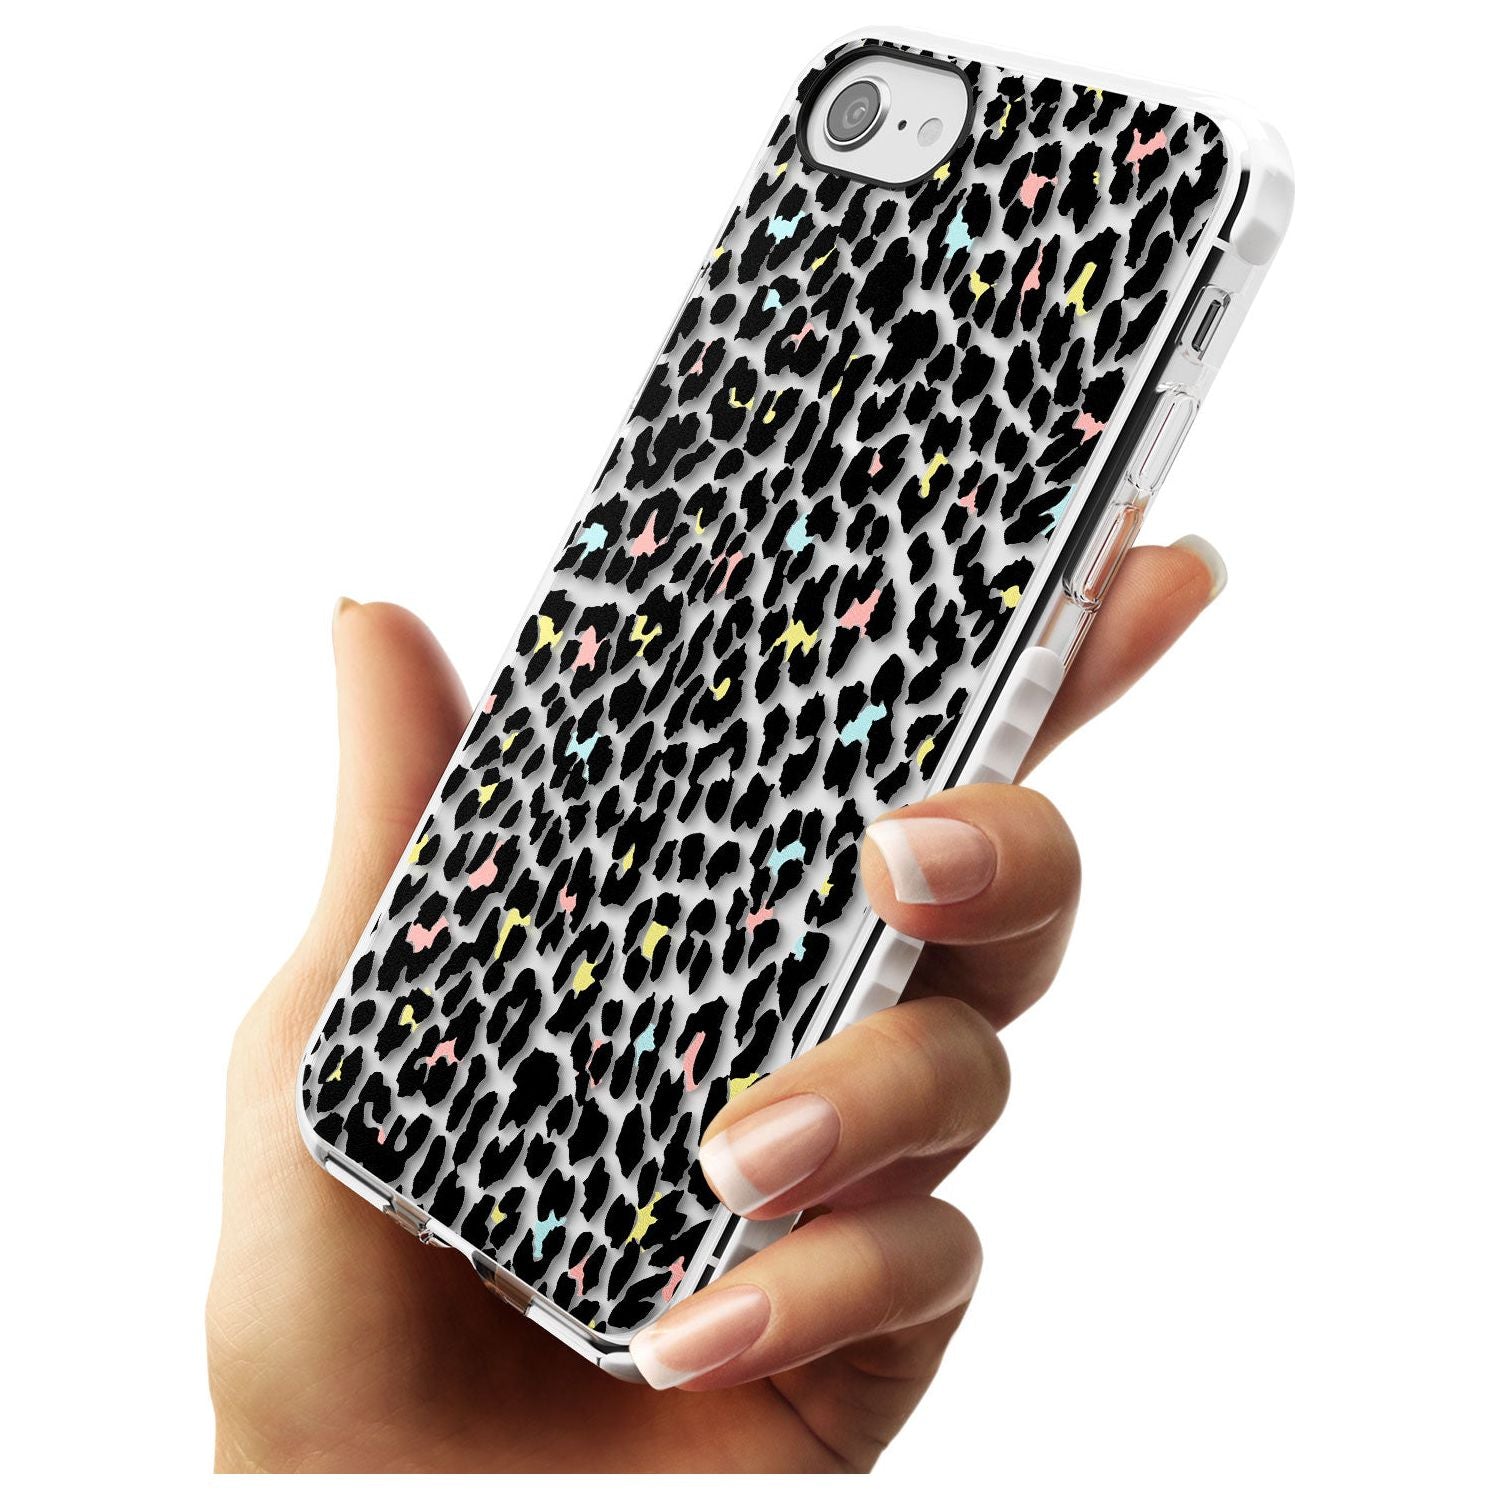 Mixed Pastels Leopard Print - Transparent Impact Phone Case for iPhone SE 8 7 Plus